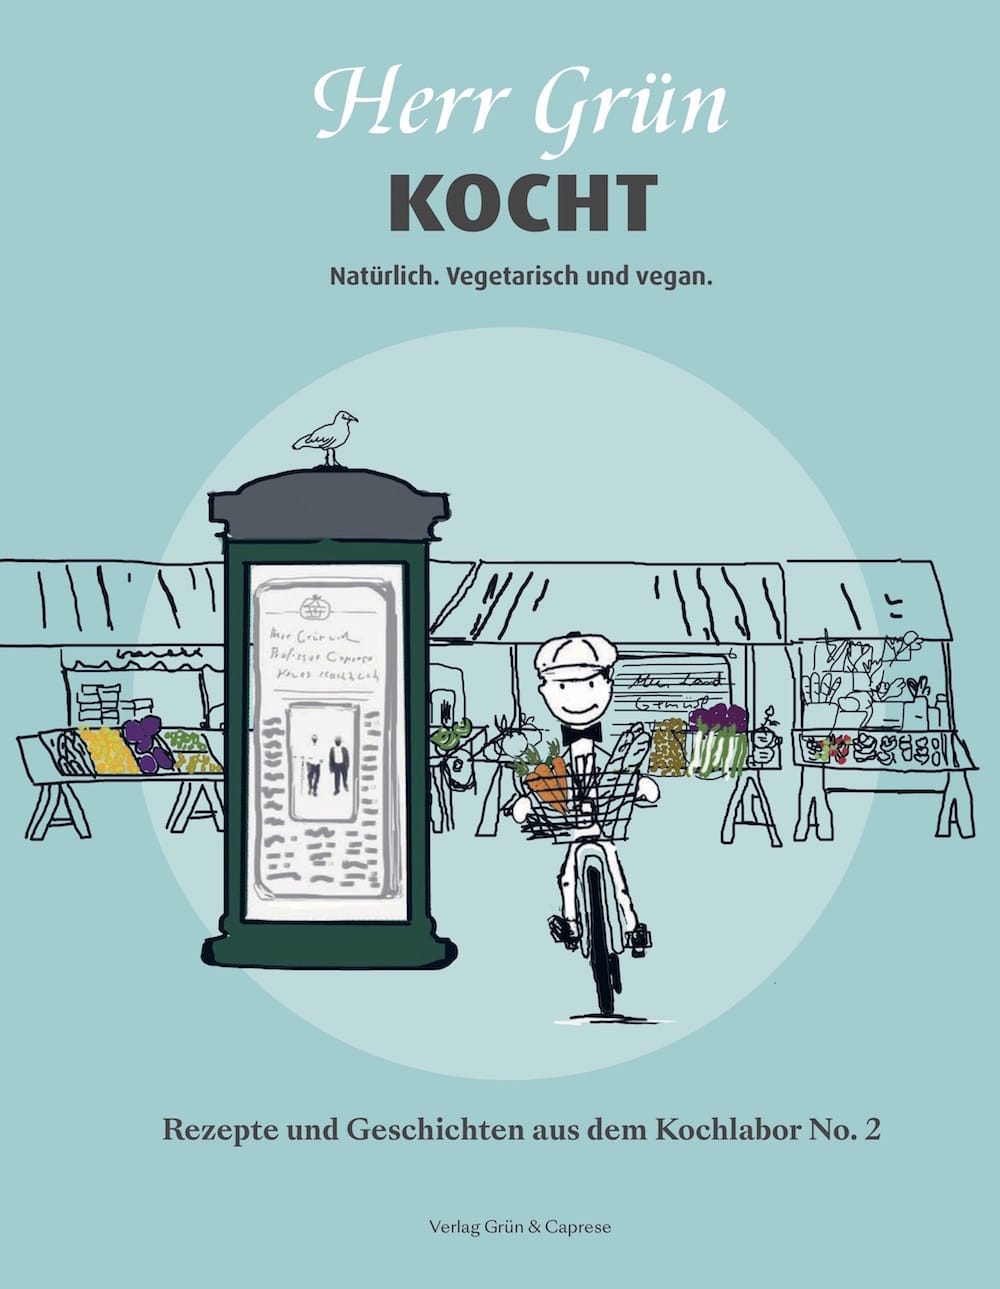 Cover des neuen Buchs von "Herr Grün kocht" mit einer Illustration, auf der ein Radfahrer in seinem Korb frische Zutaten vom Markt nach Hause fährt.